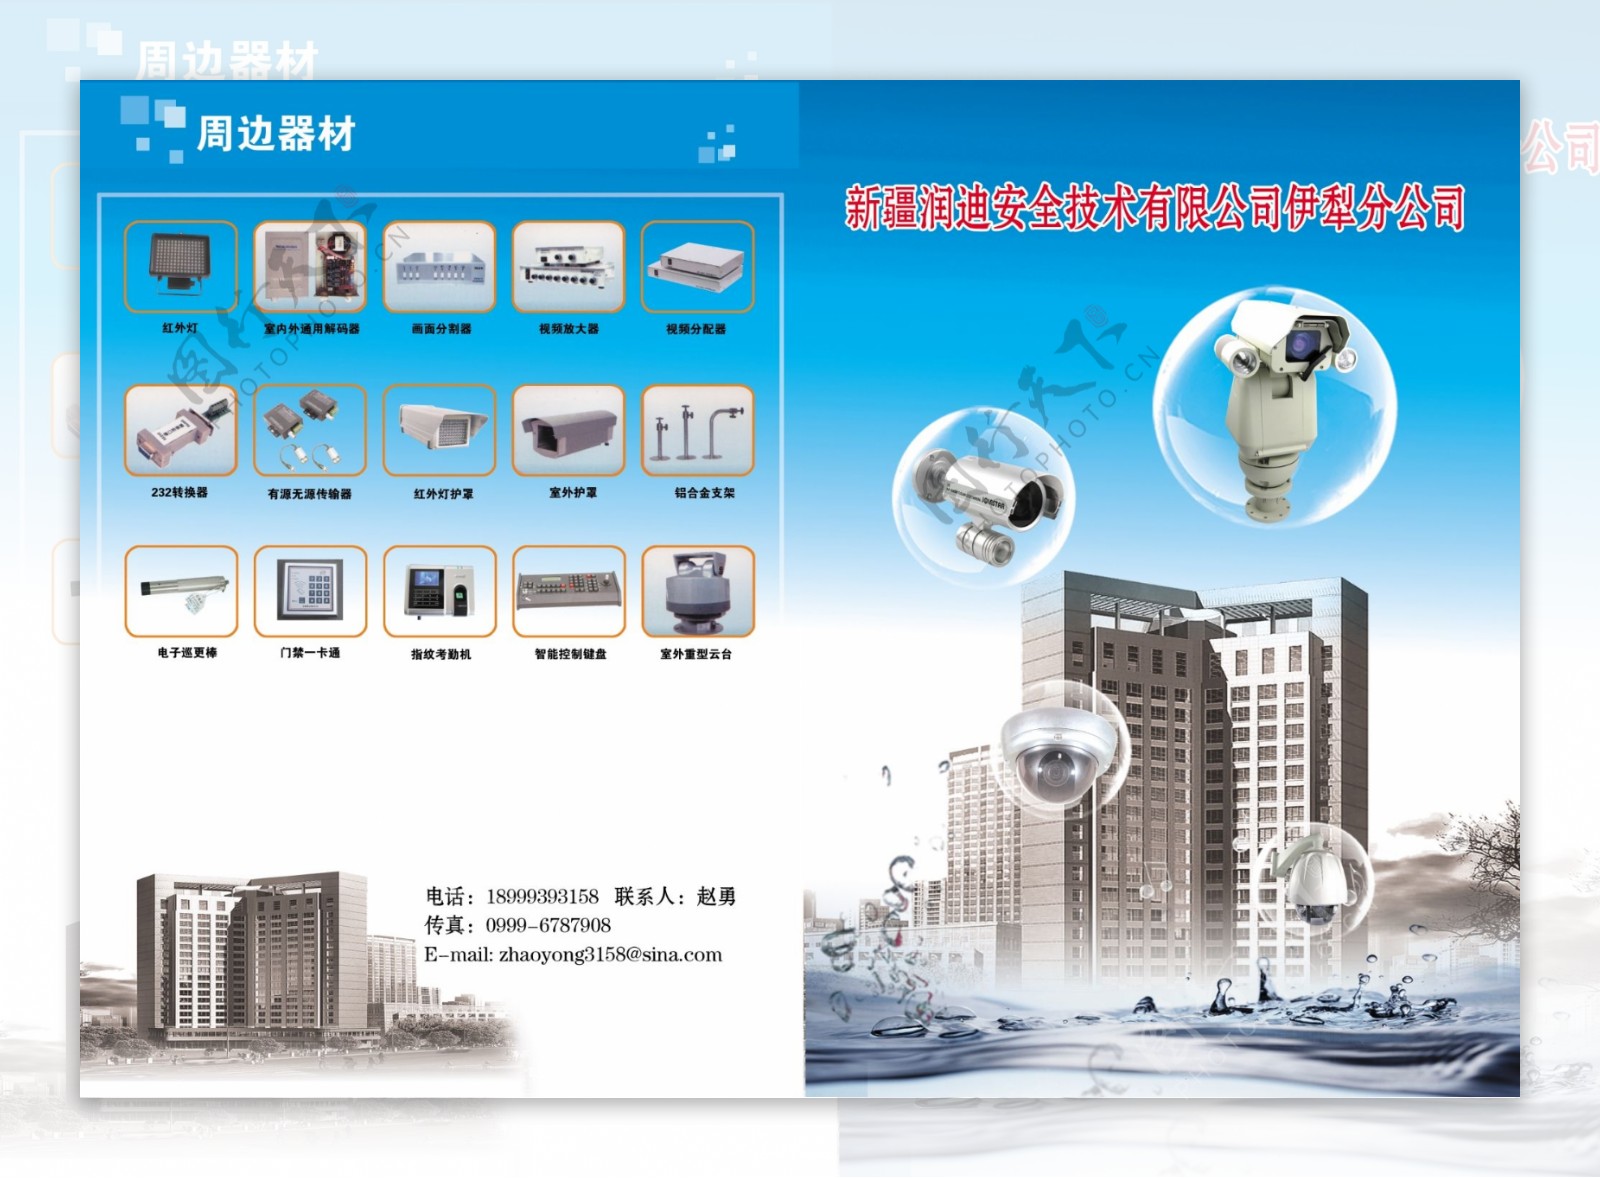 安全监控设备公司画册封面图片